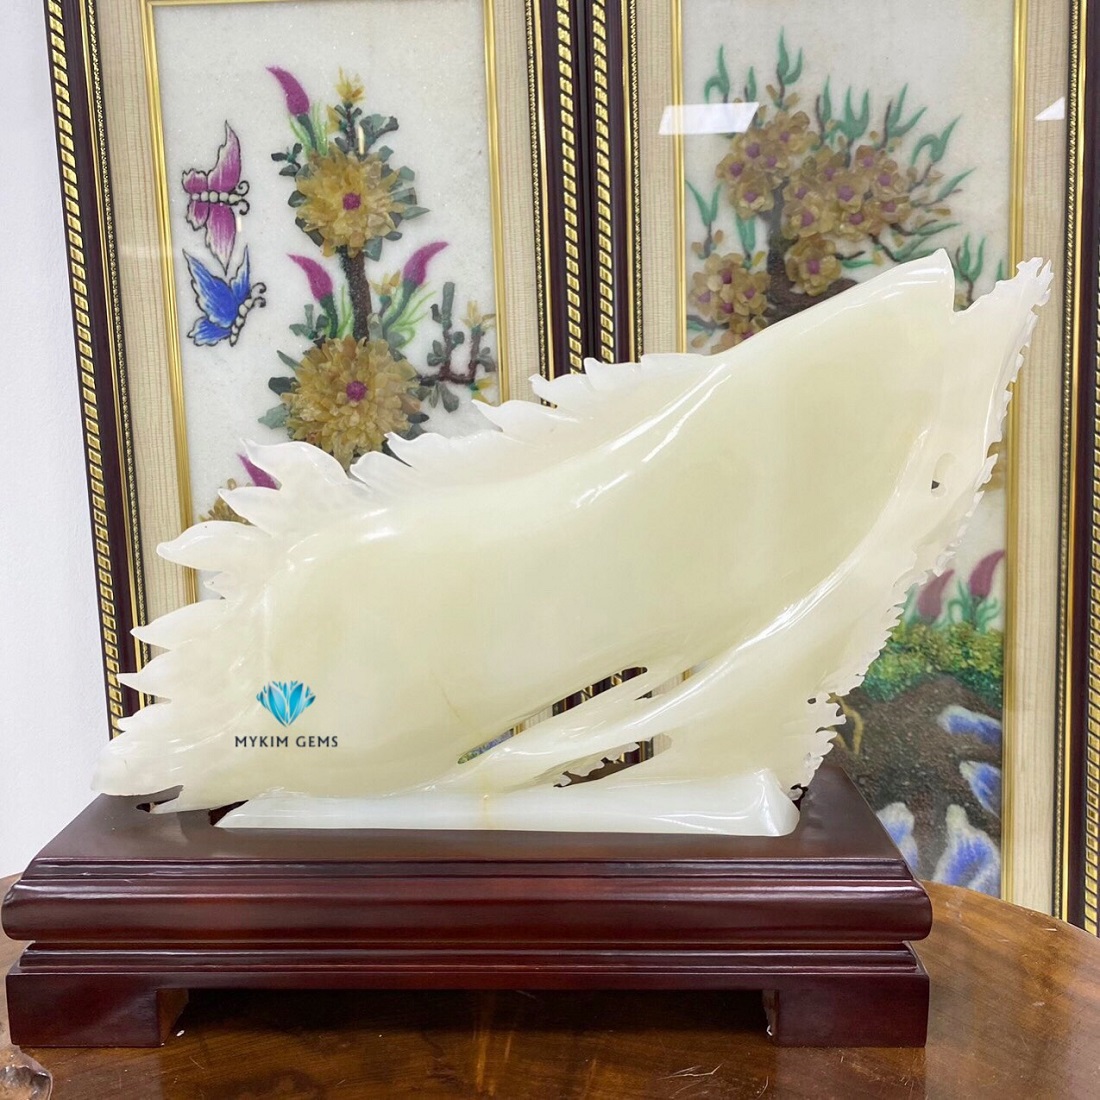 Cá Chép Rồng-Cá Chép Ngọc Onyx Trắng